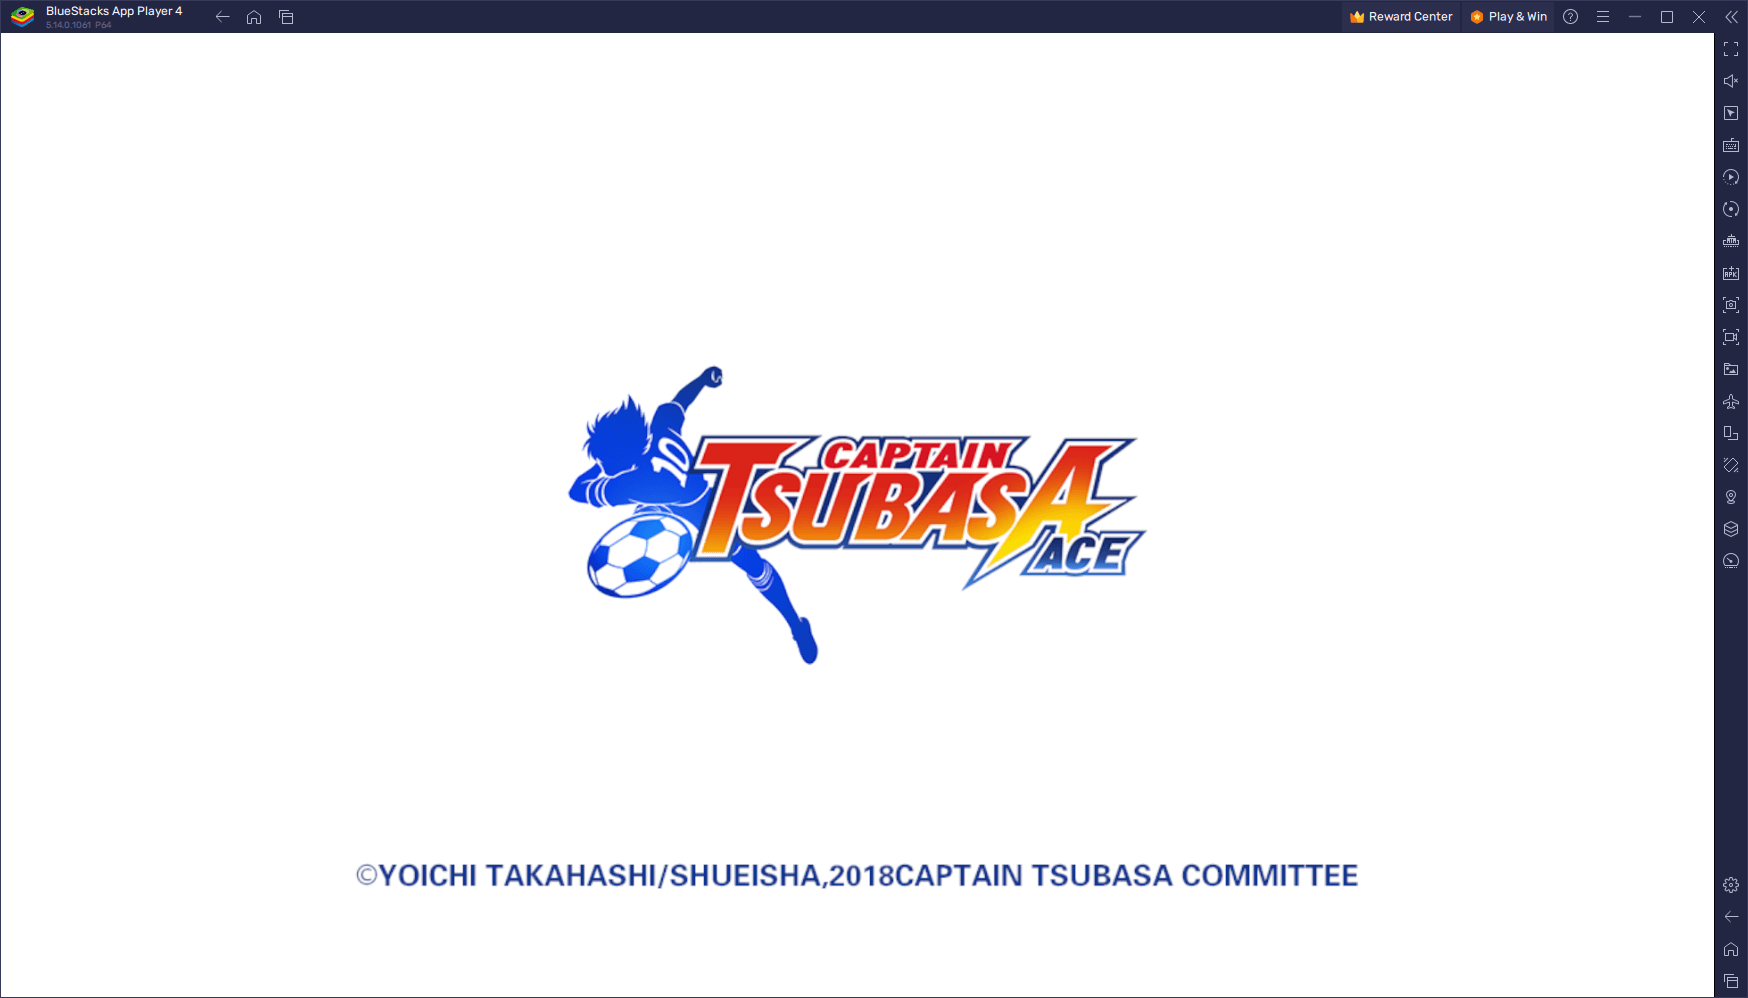 Verbessere dein Captain Tsubasa: Ace Erlebnis auf dem PC mit BlueStacks Gamepad-Unterstützung